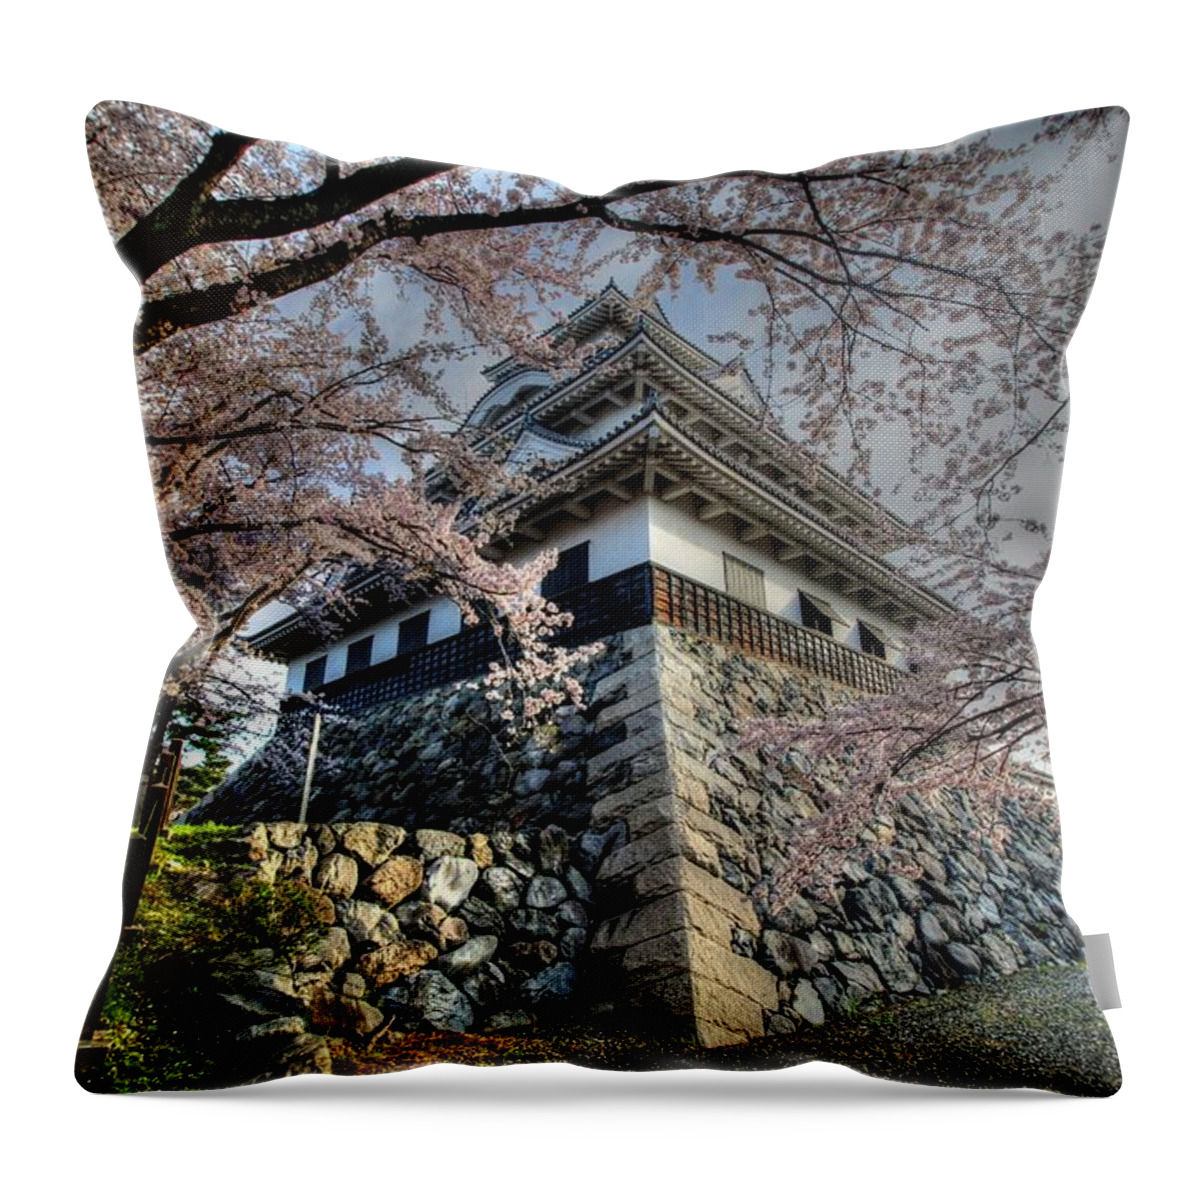 Nagahama Japan Throw Pillow featuring the photograph Nagahama Japan #5 by Paul James Bannerman